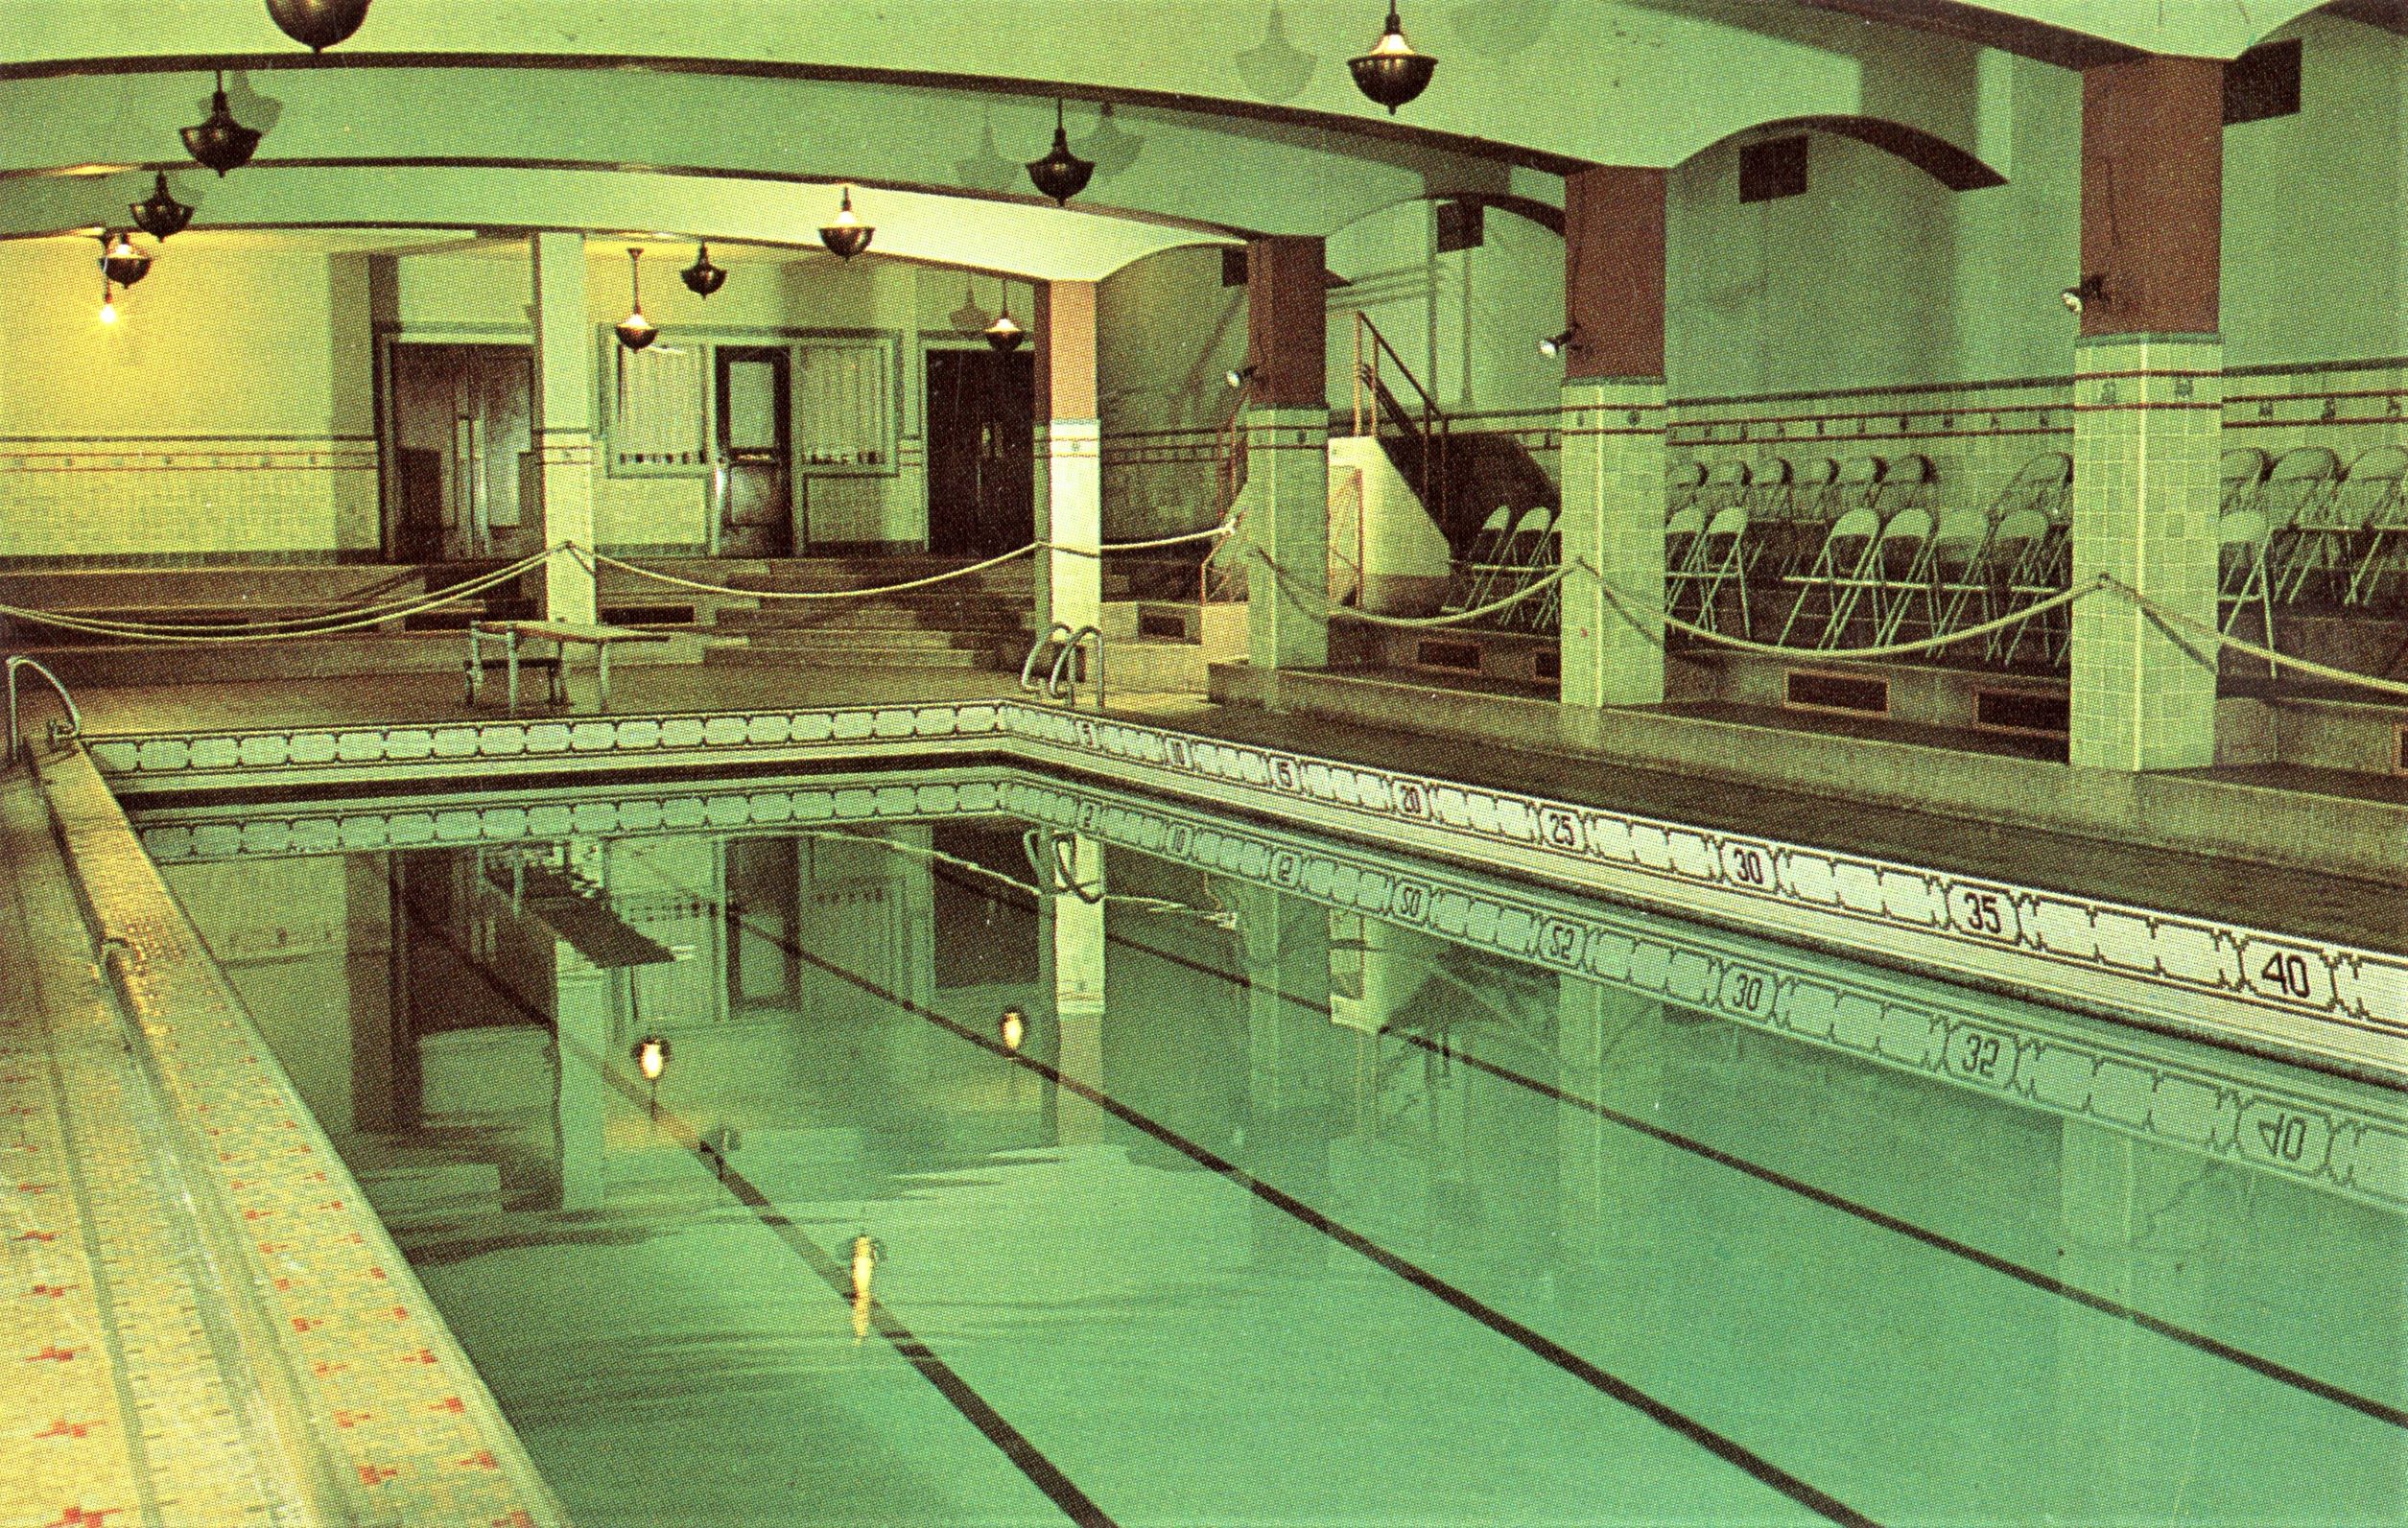 Jav swimming pool